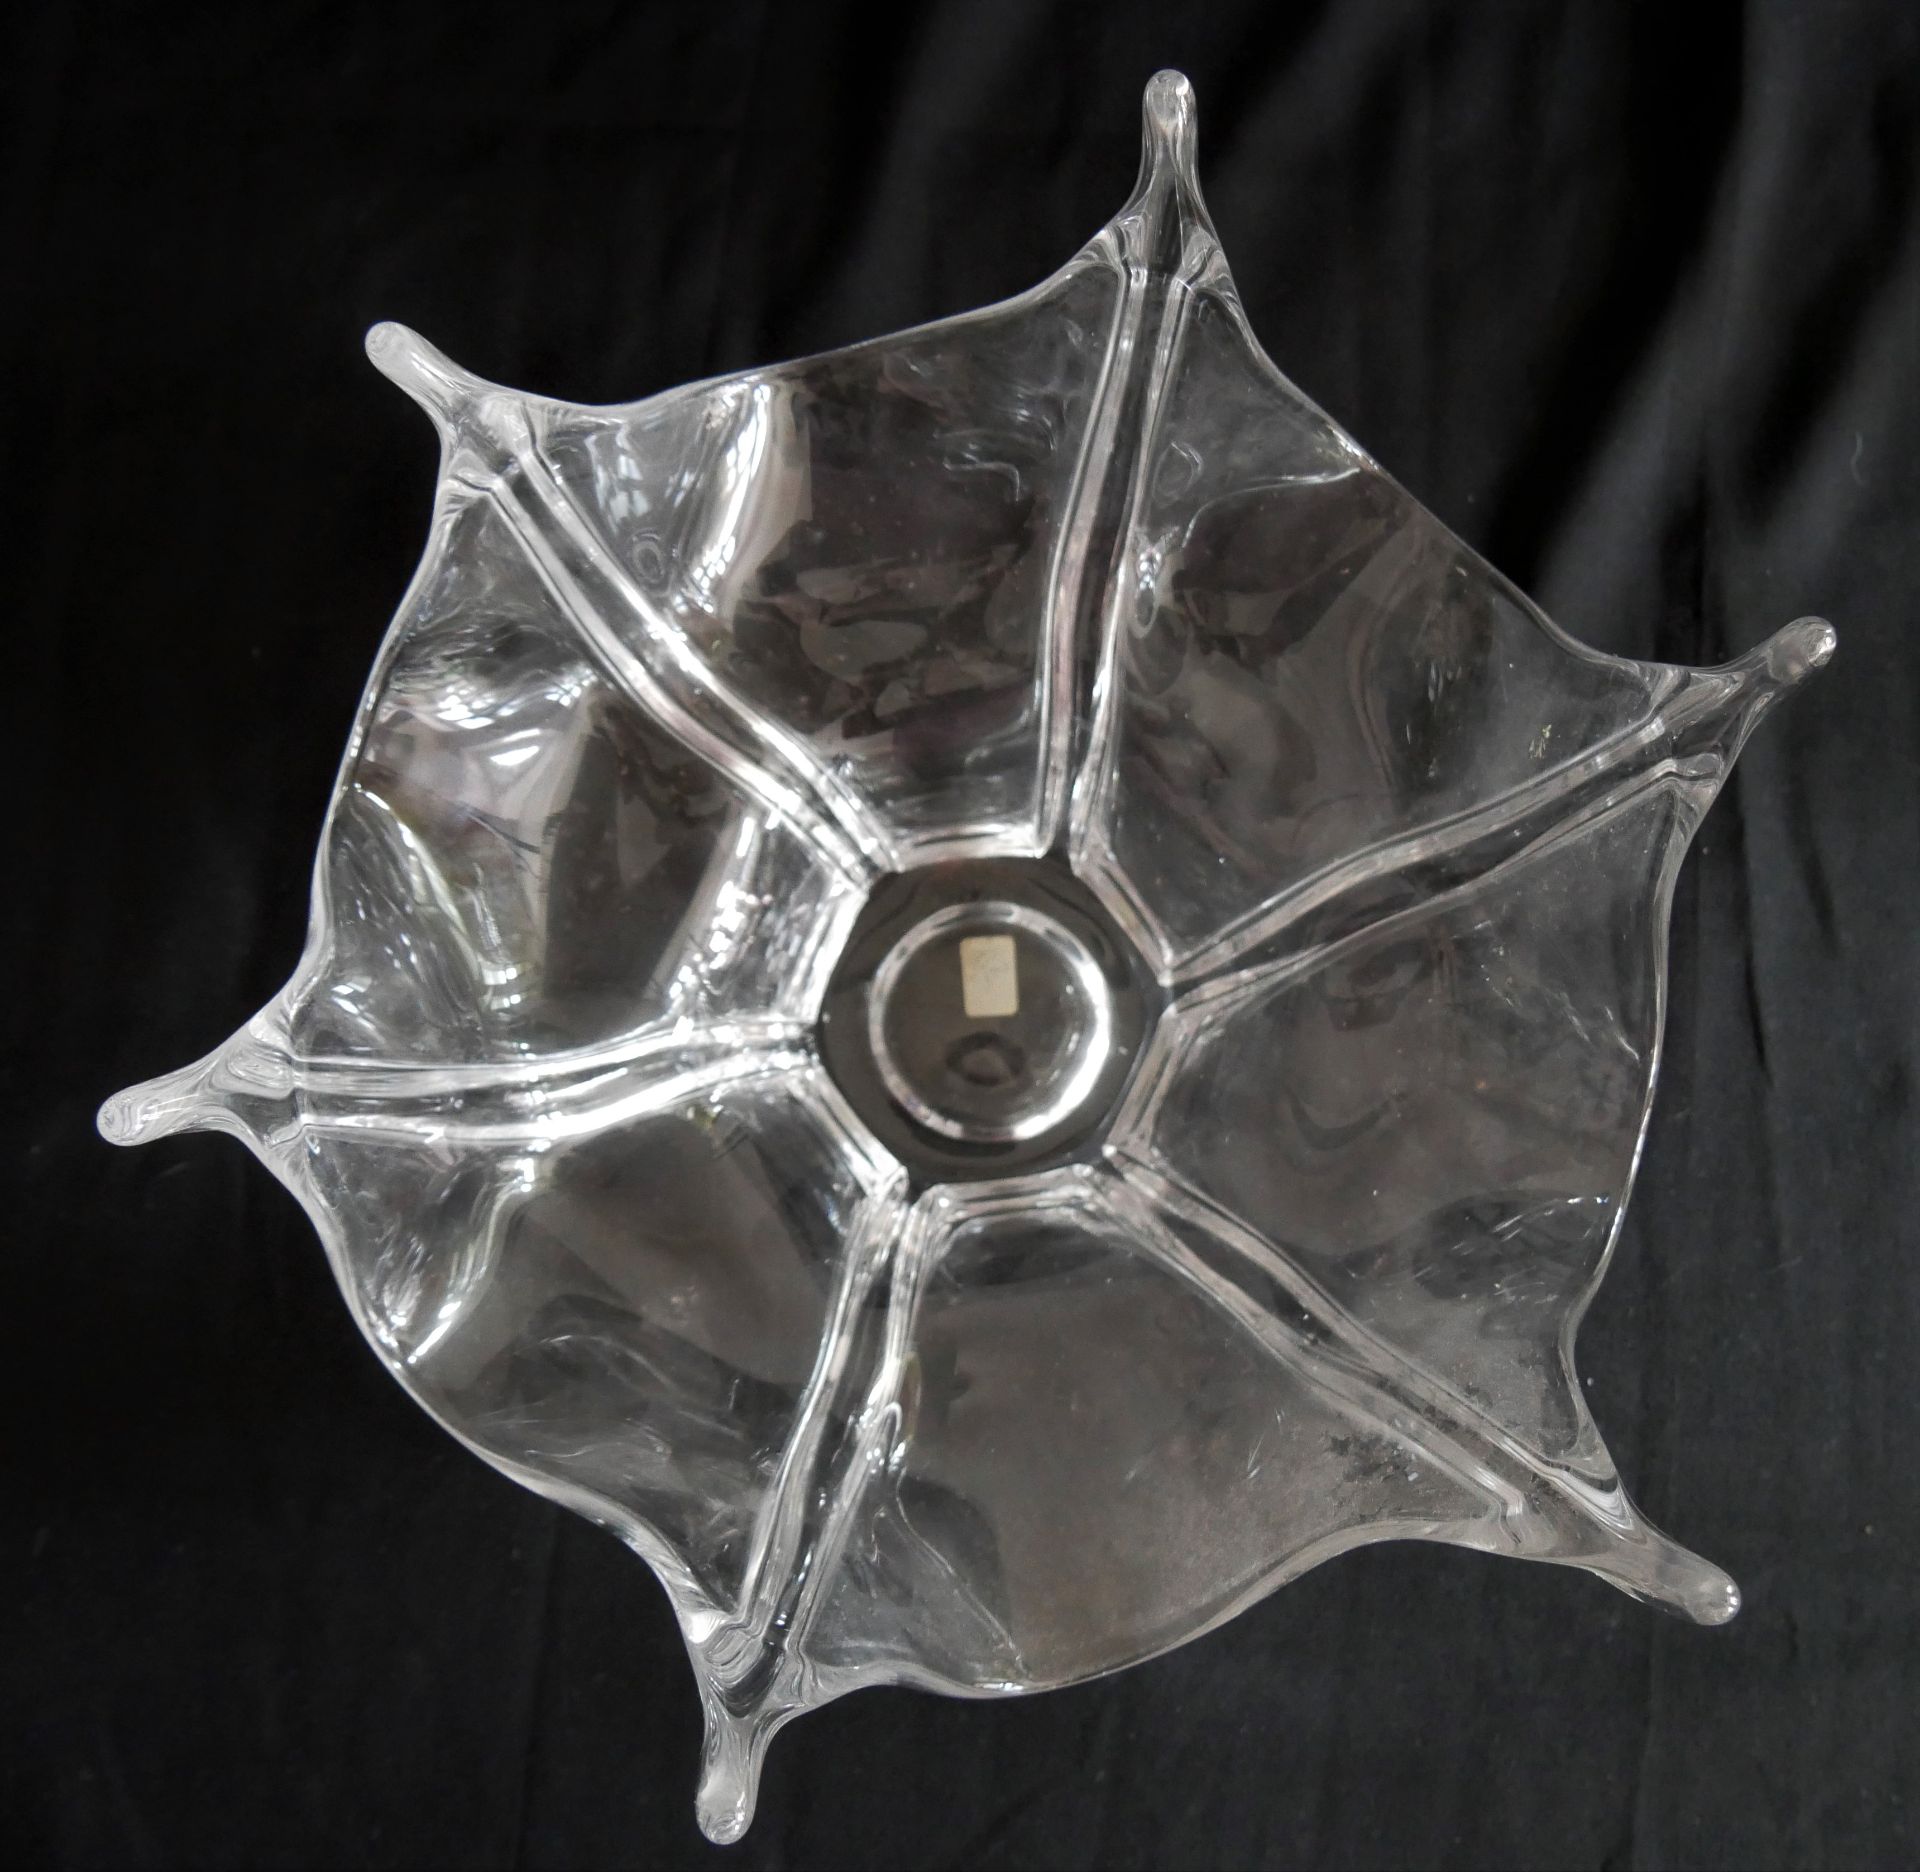 1 große Murano Klar-Kristall-Glasschale. Höhe ca. 17 cm, durchmesser ca. 29 cm. - Bild 2 aus 2